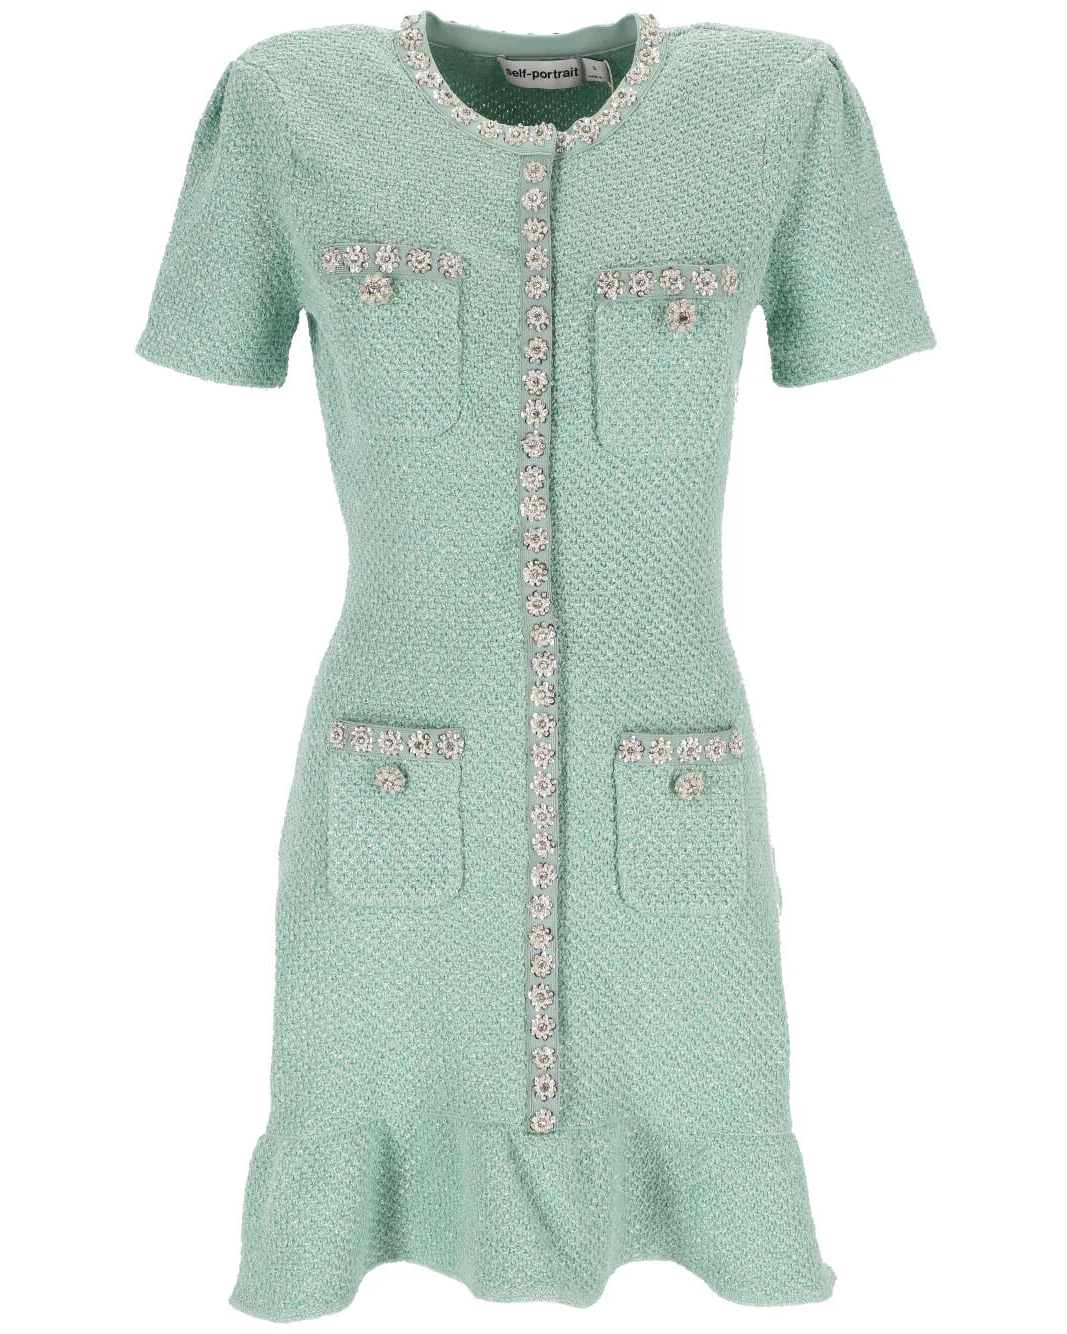 SELF-PORTRAIT Sequin Knit Mini Dress - Mint – B. Barnett